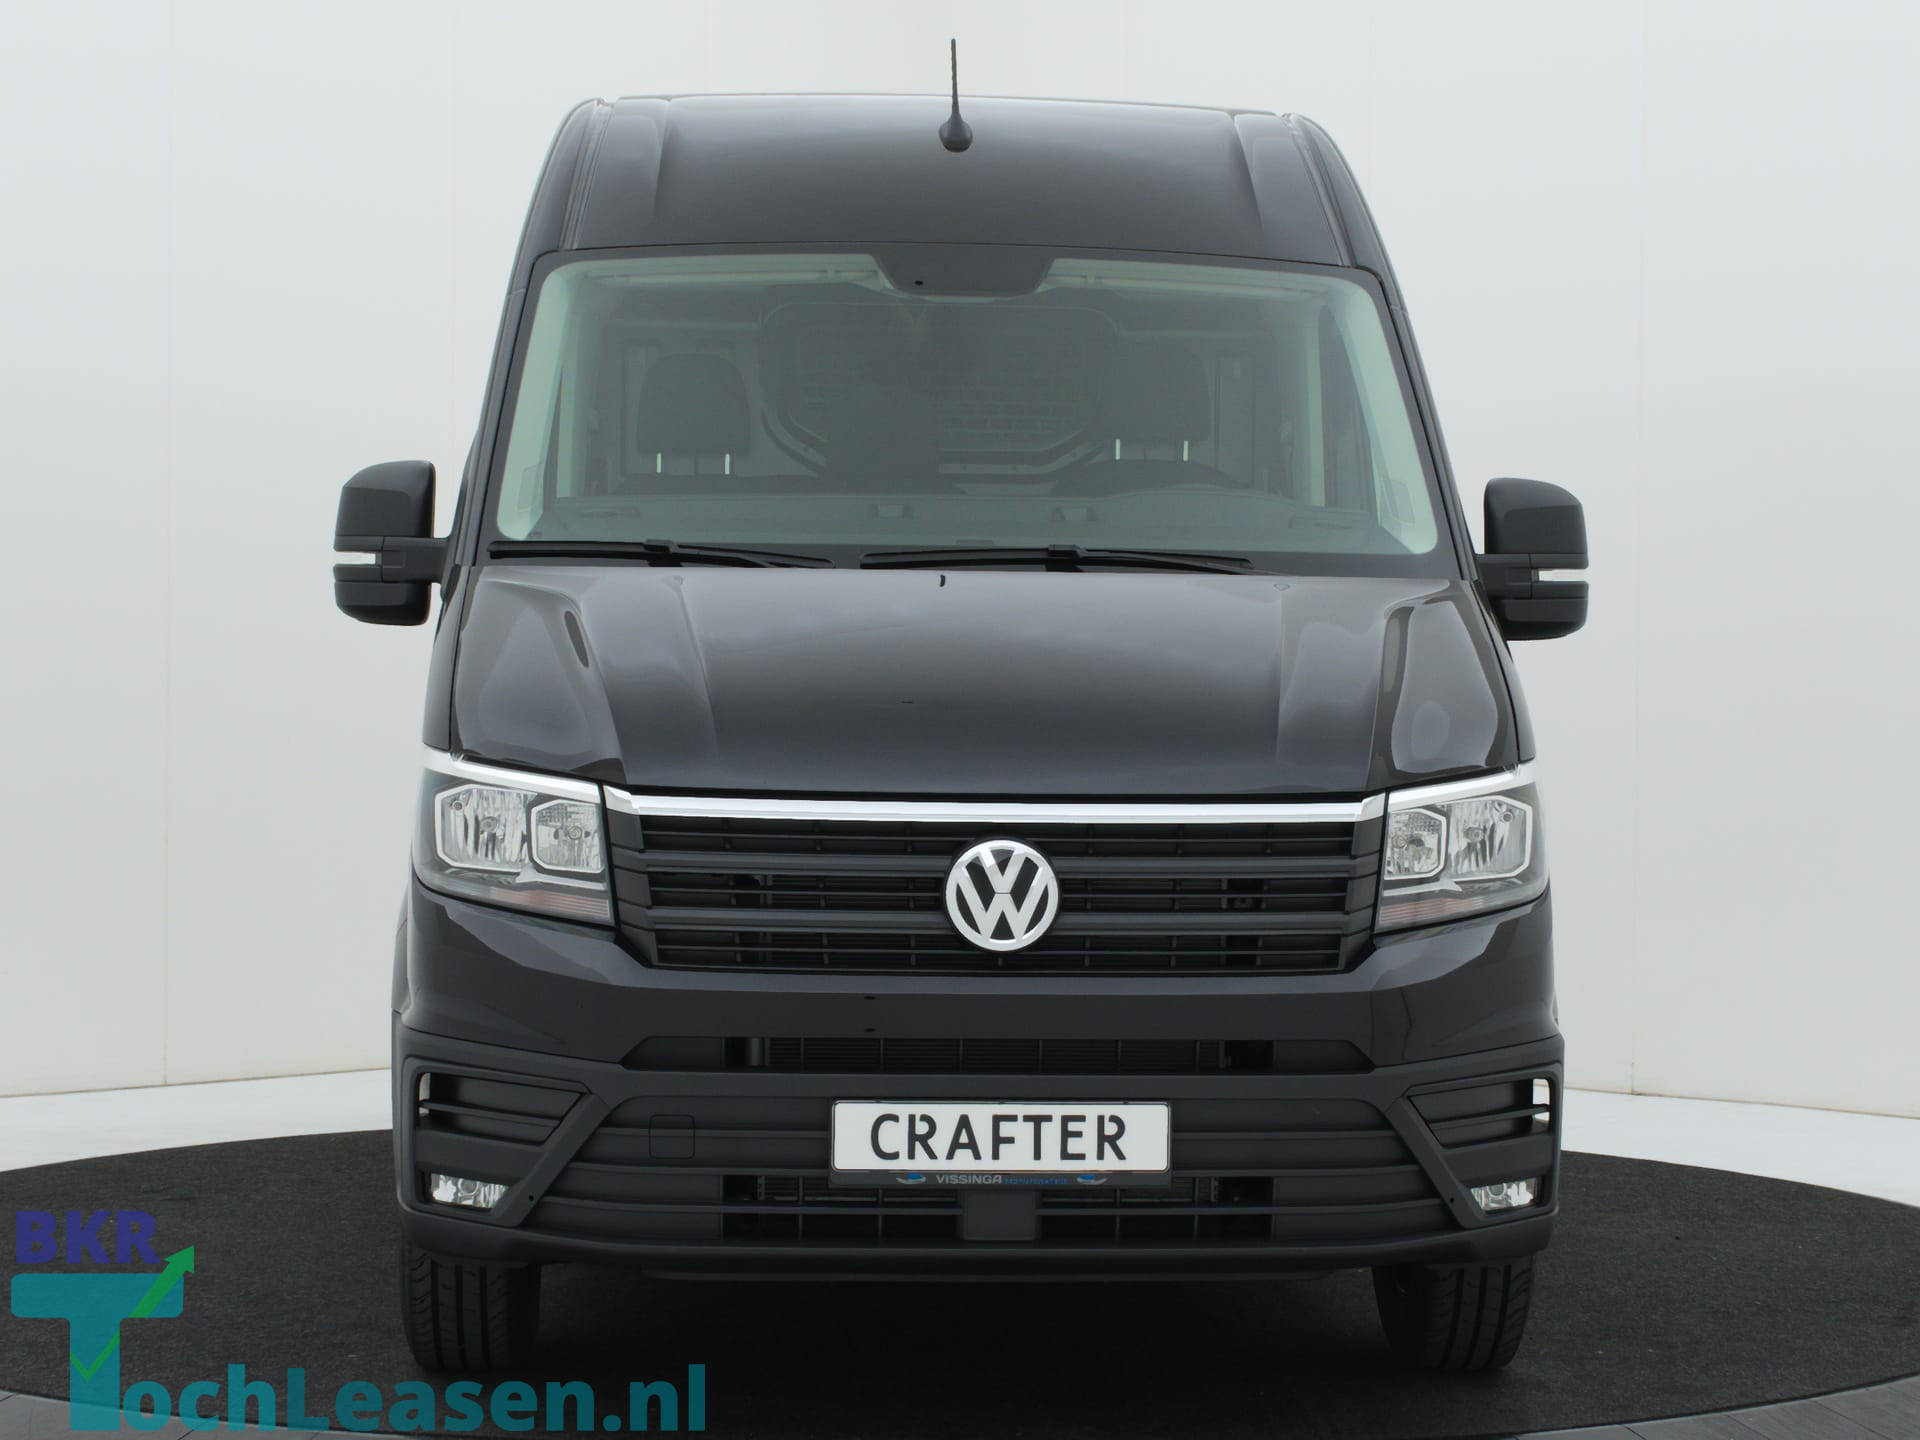 BKR toch leasen - Volkswagen Crafter - Zwart